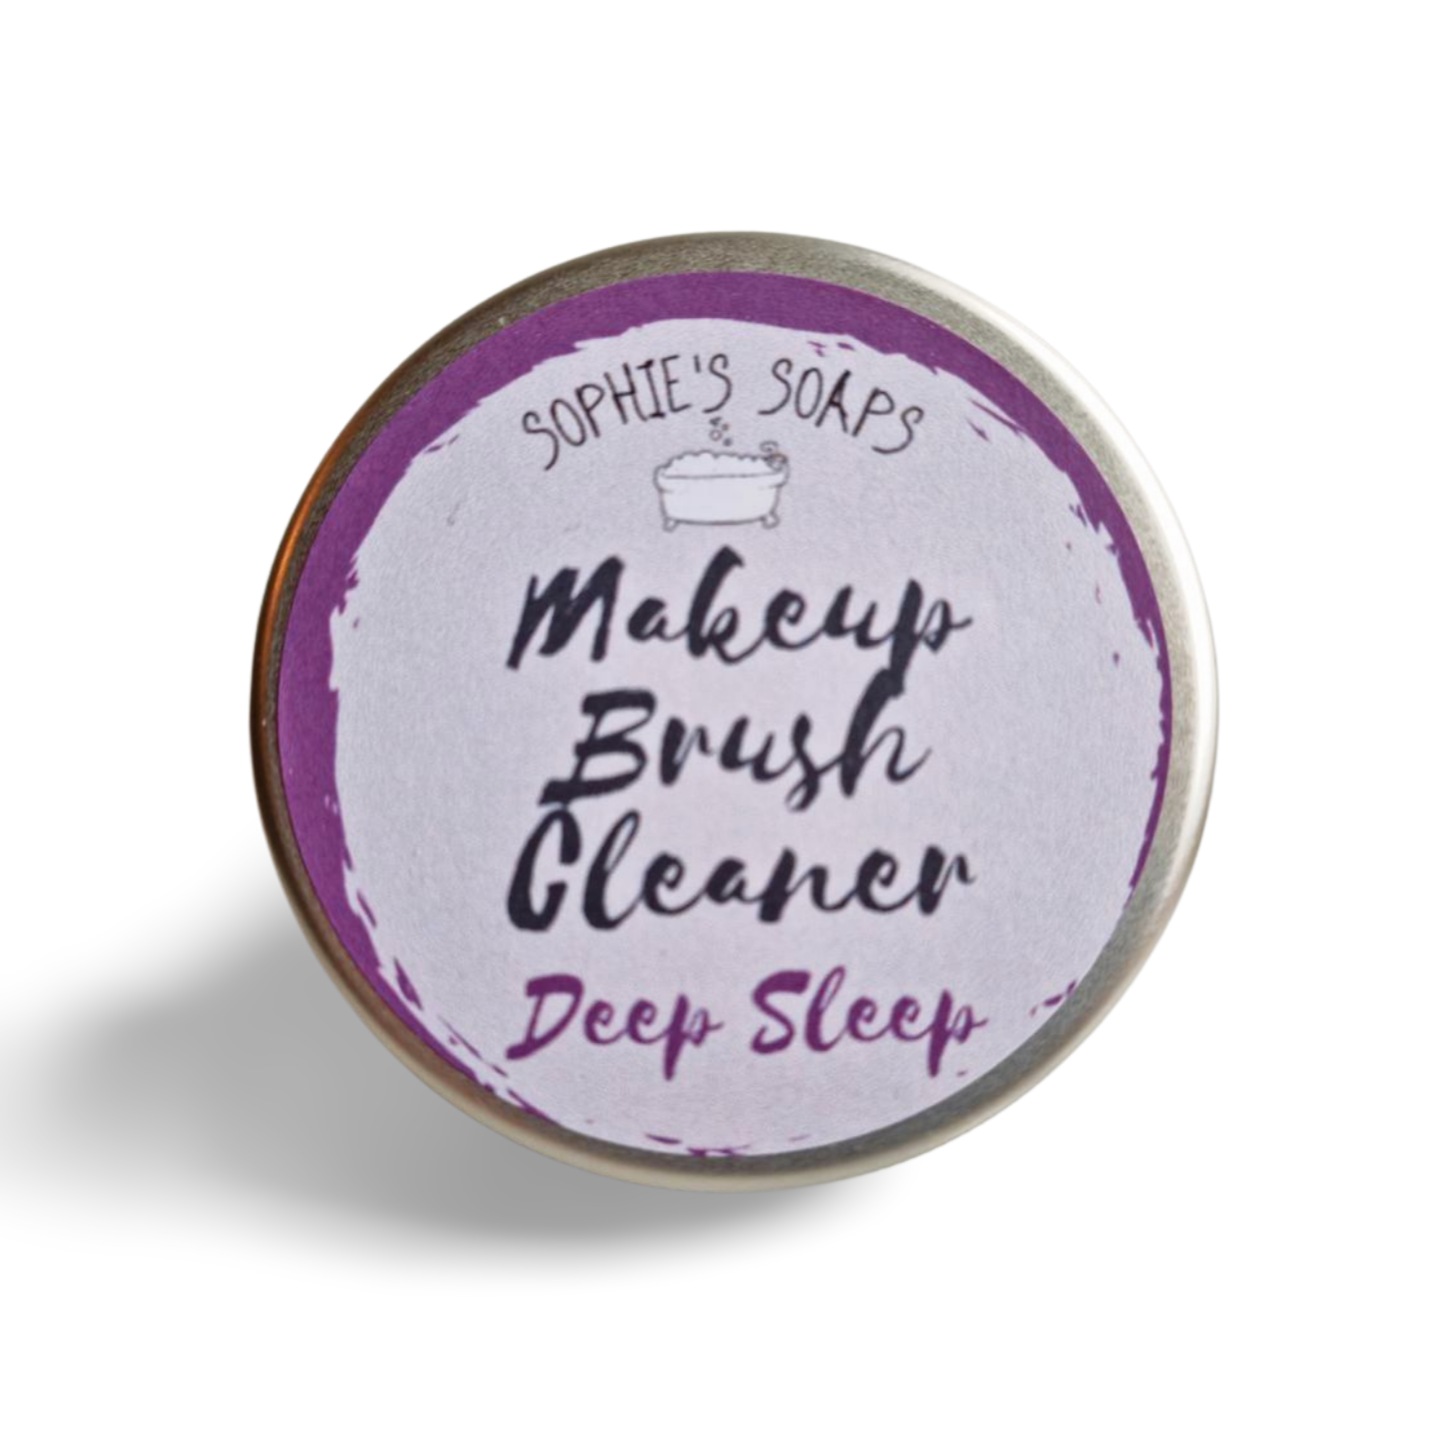 Deep Sleep Makeup Brush Cleaner - Sophie's Soaps